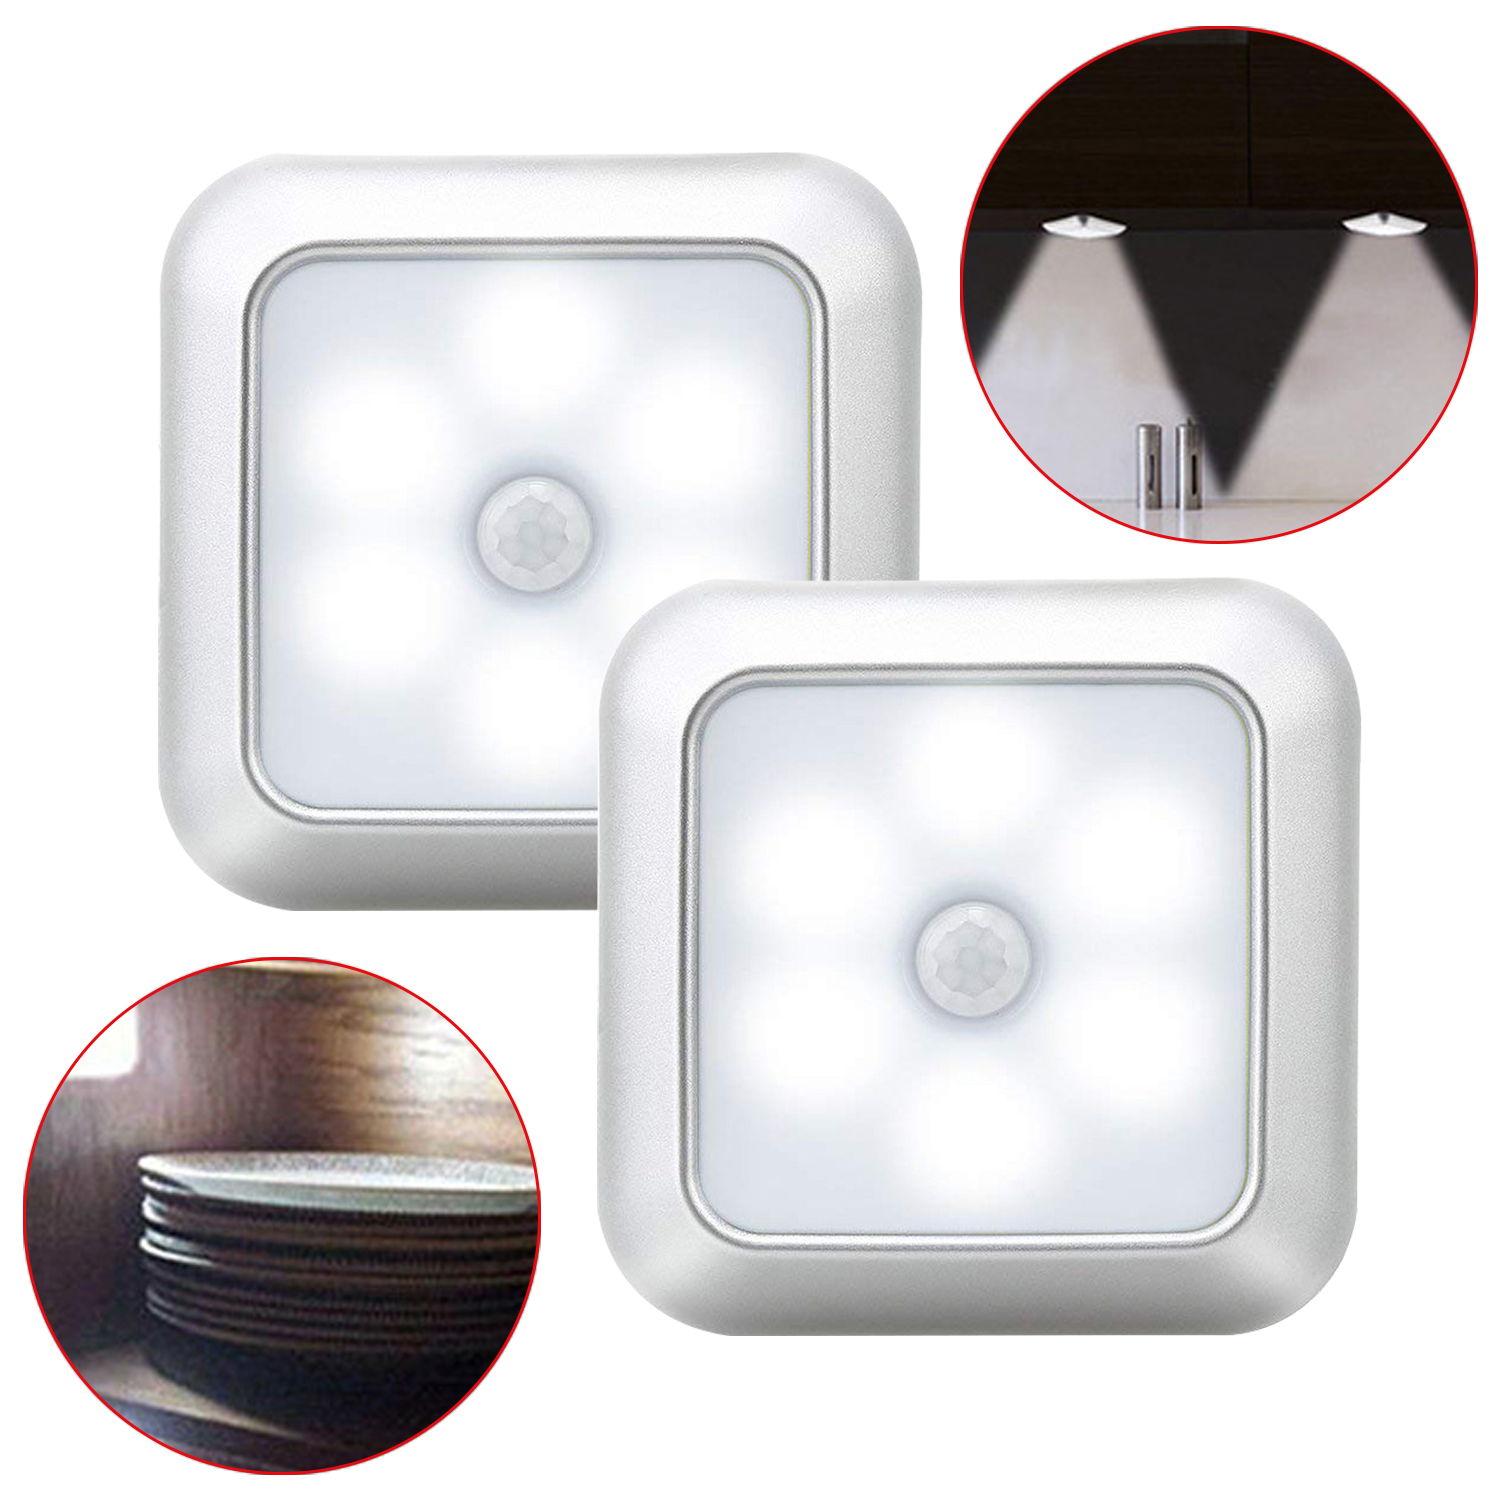 Luz de noche con Sensor de movimiento LED alimentado por batería, iluminación inalámbrica, luz para escaleras, lámpara de pared del dormitorio para armario, baño, armario, hogar